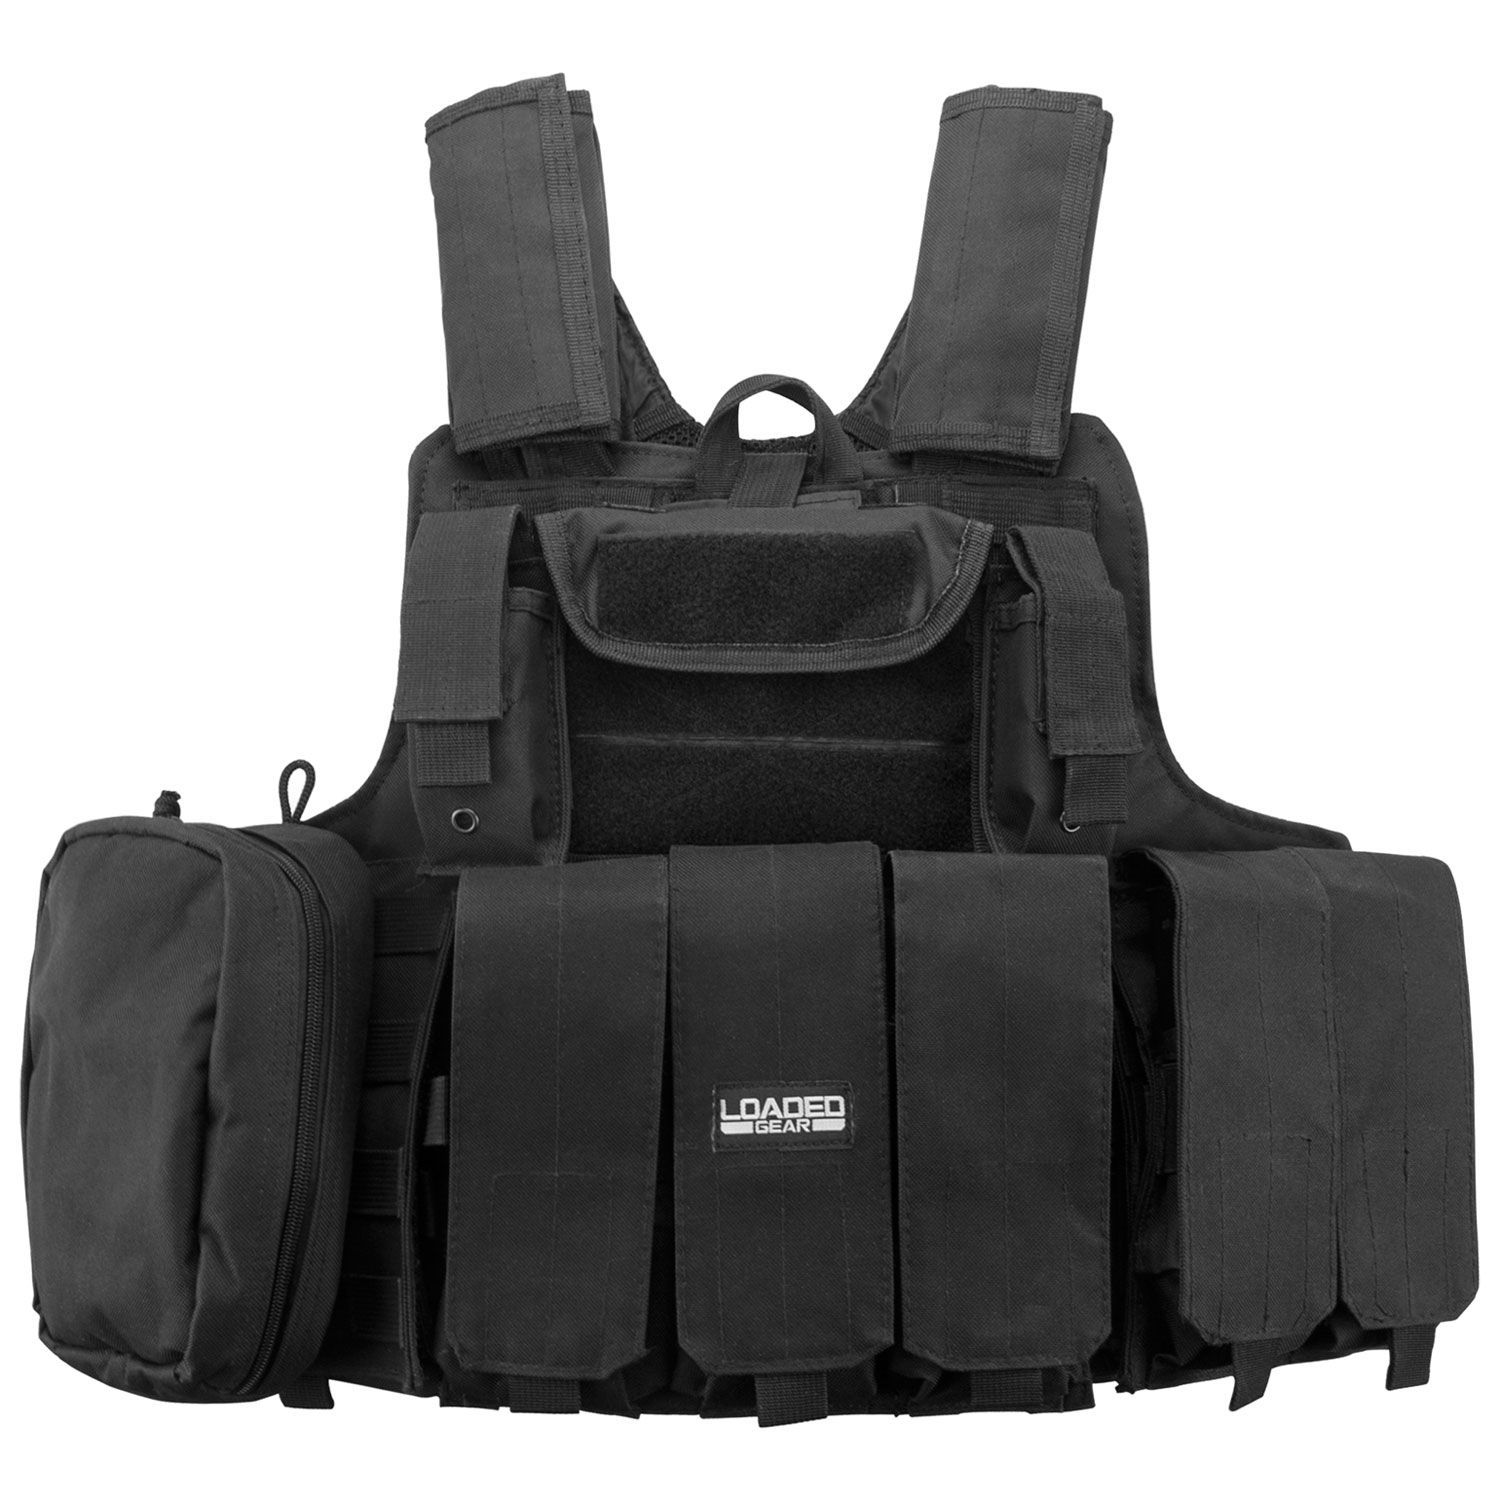 Loaded Gear VX-300 Tactical Vest, Black | eBay